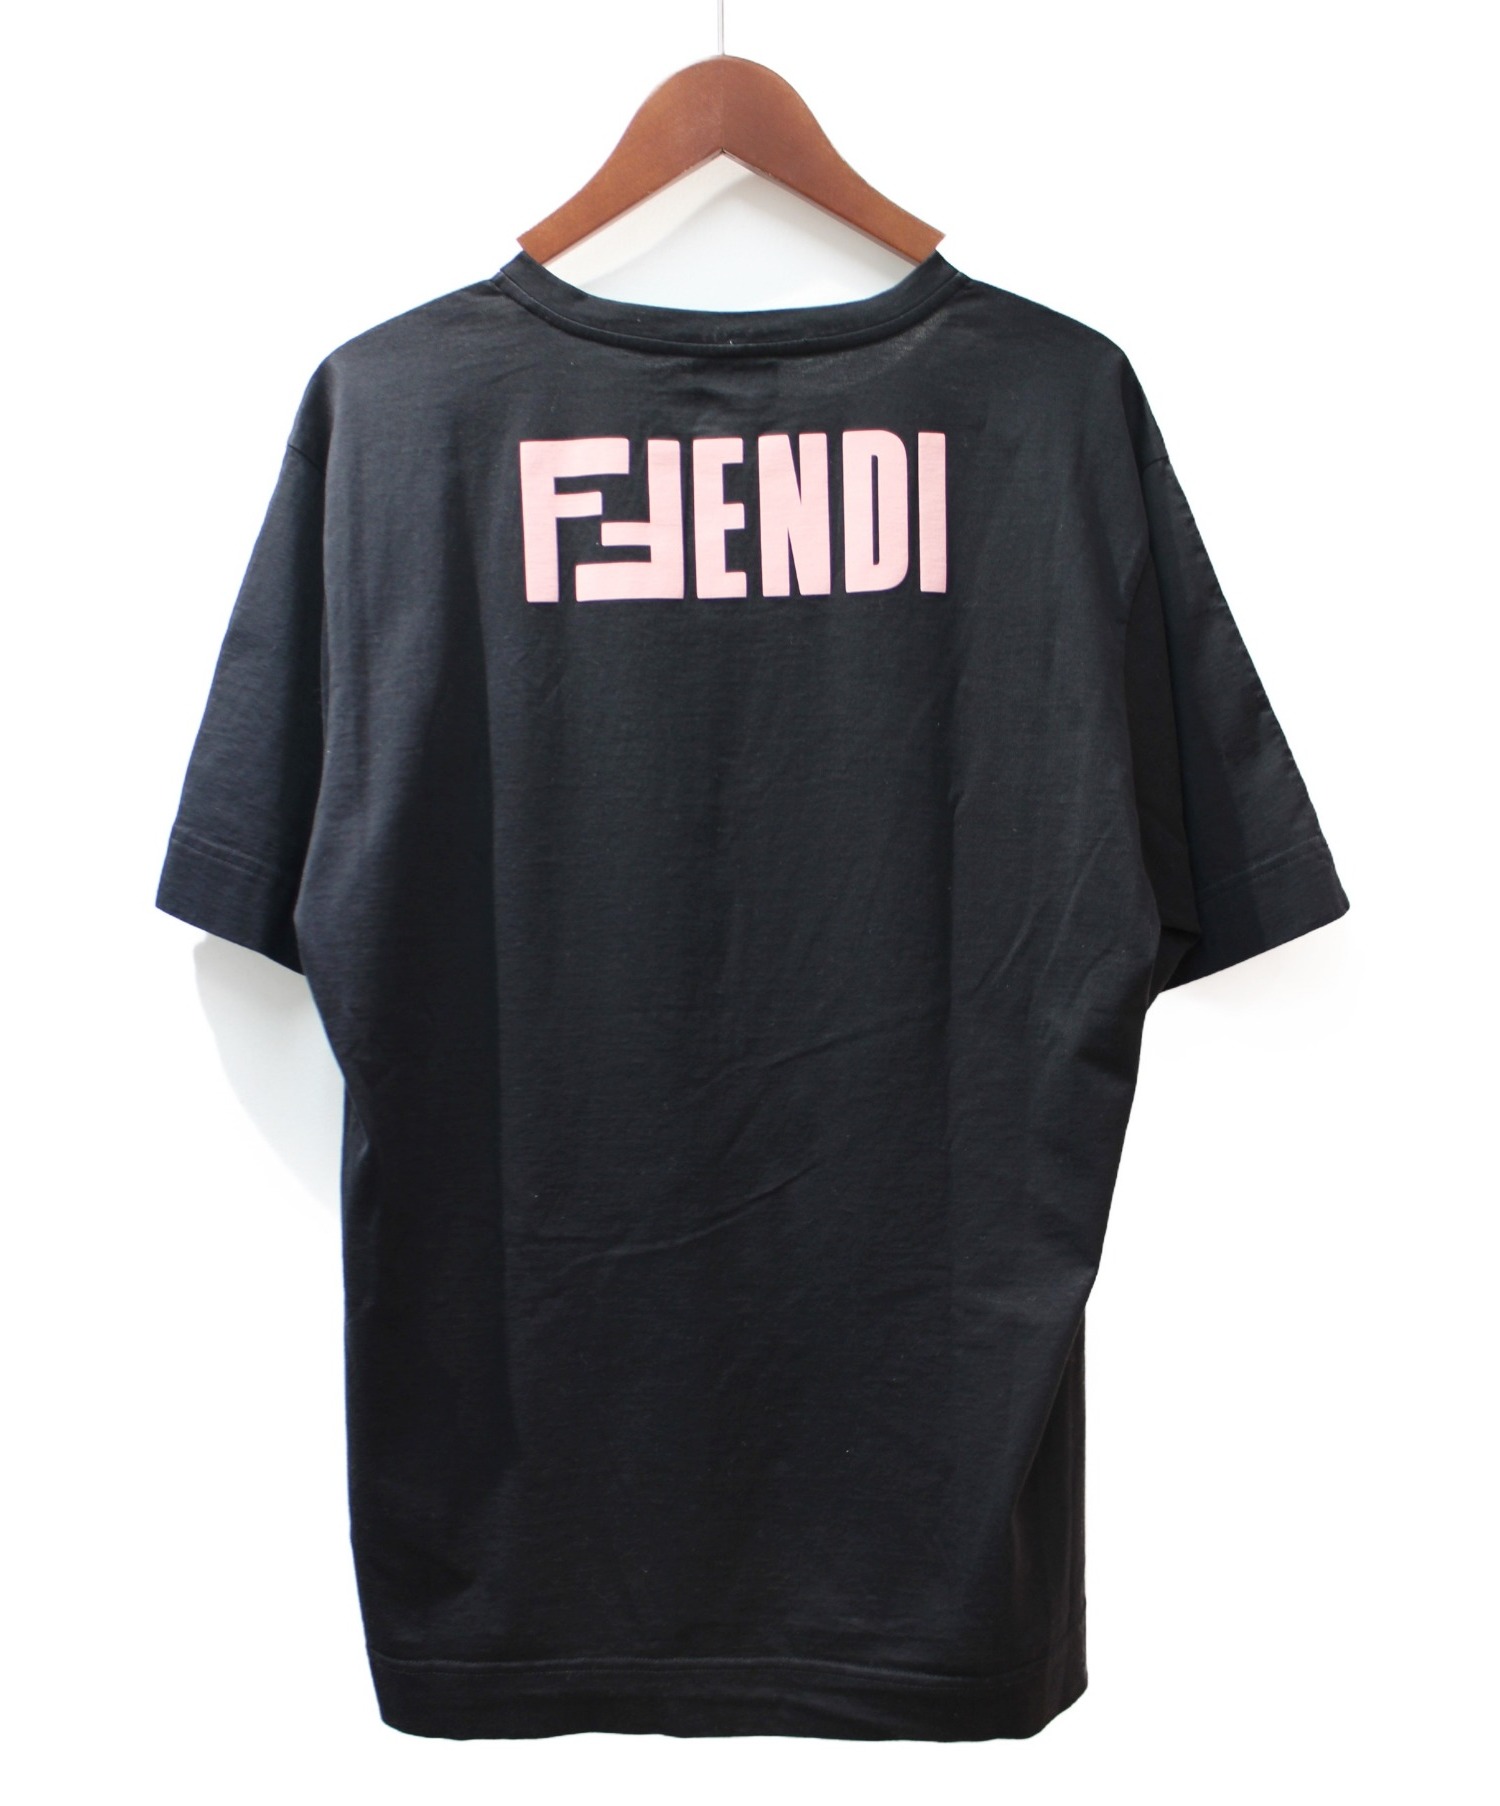 FENDI (フェンディ) バイカラーロゴTシャツ ホワイト×ブラック サイズ:S